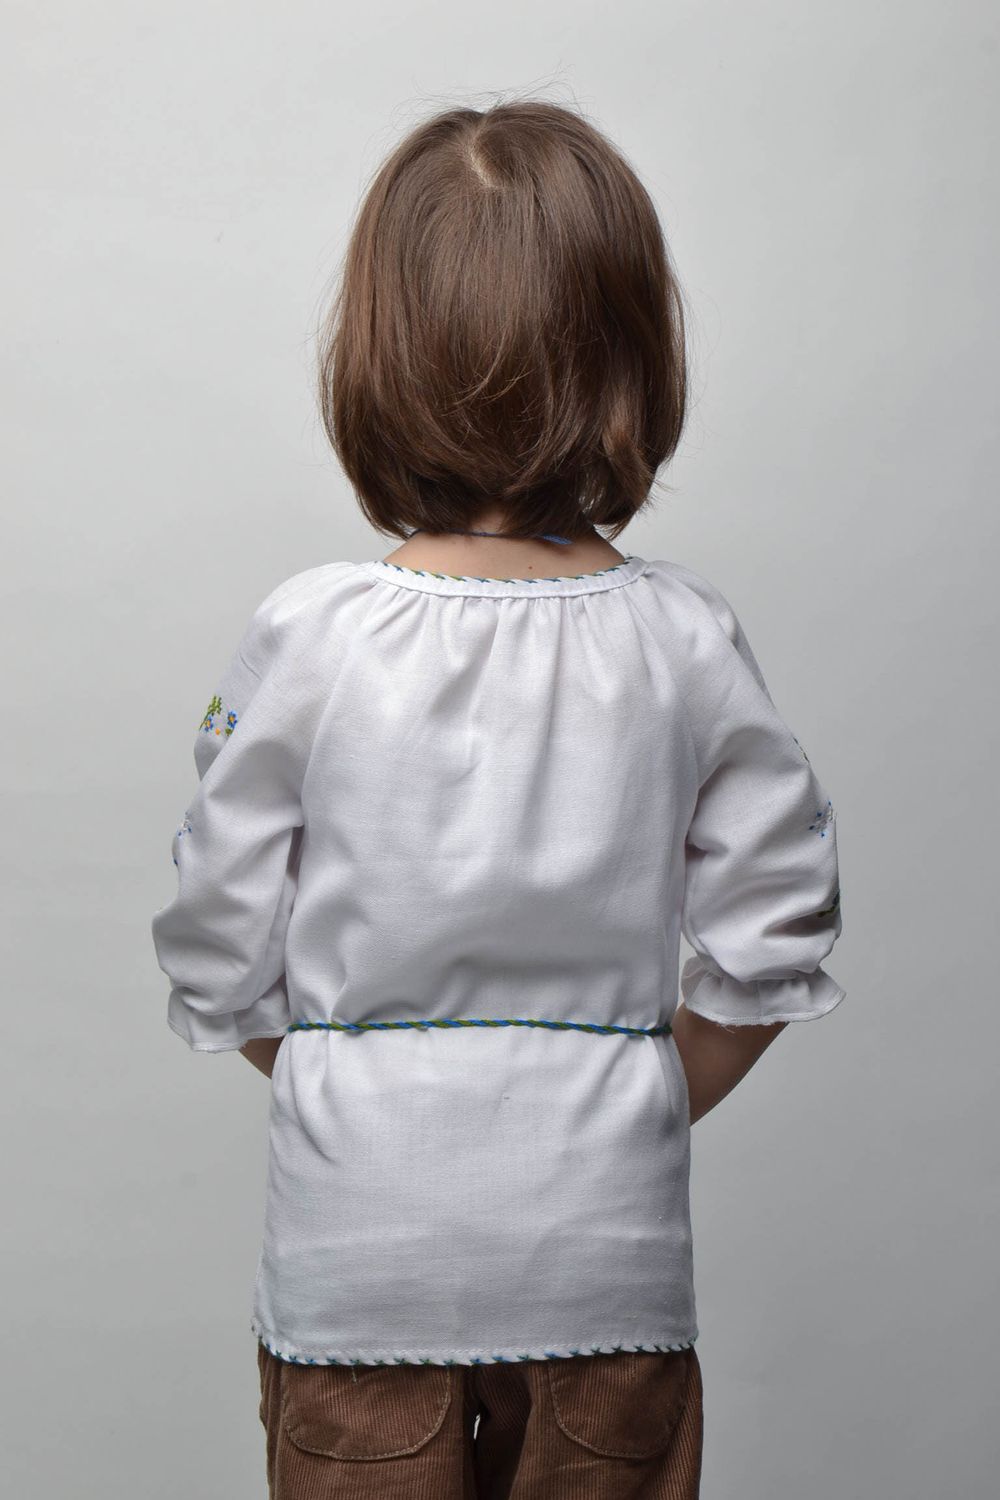 Camisa étnica bordada para niña de 5-7 años de edad foto 4